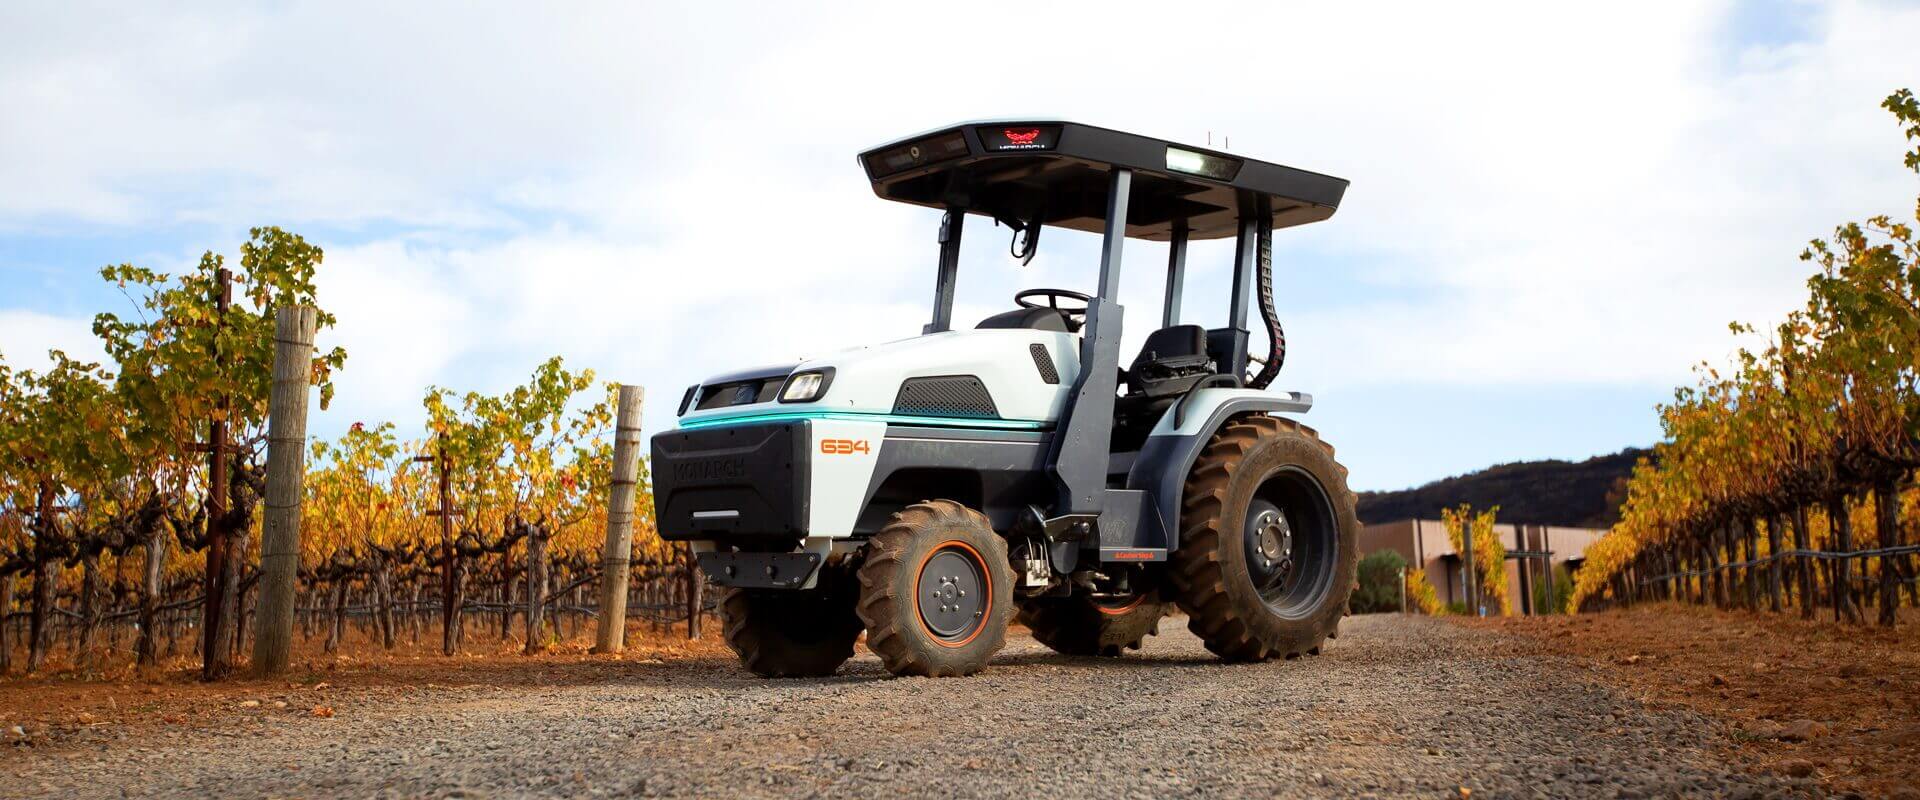 Компания Monarch Tractor представила первый в мире беспилотный электрический трактор